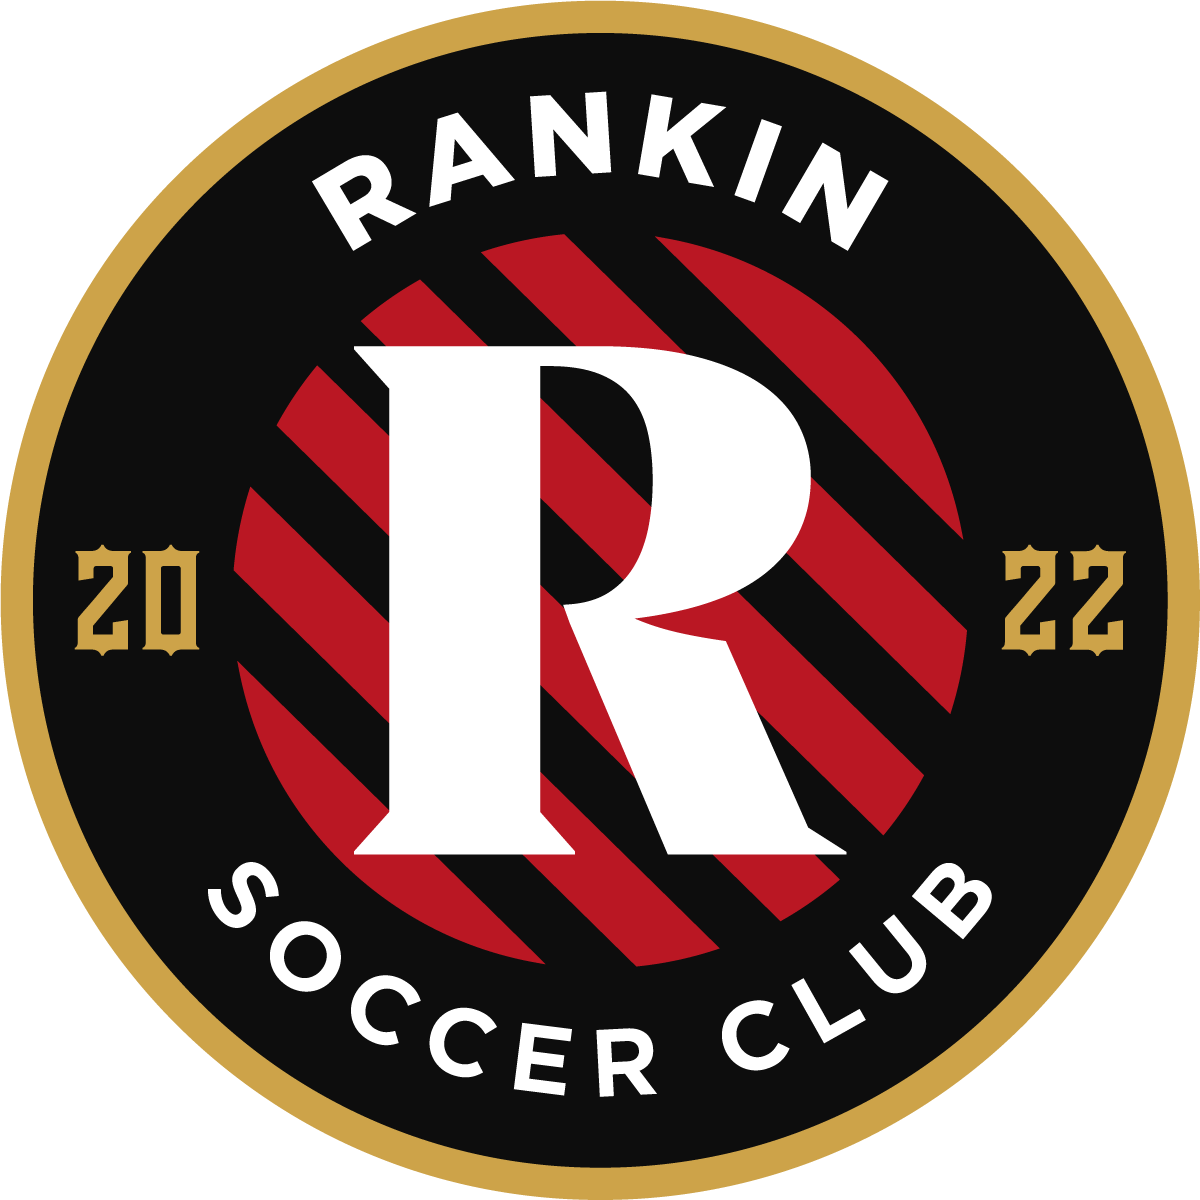 Rankin Soccer Club